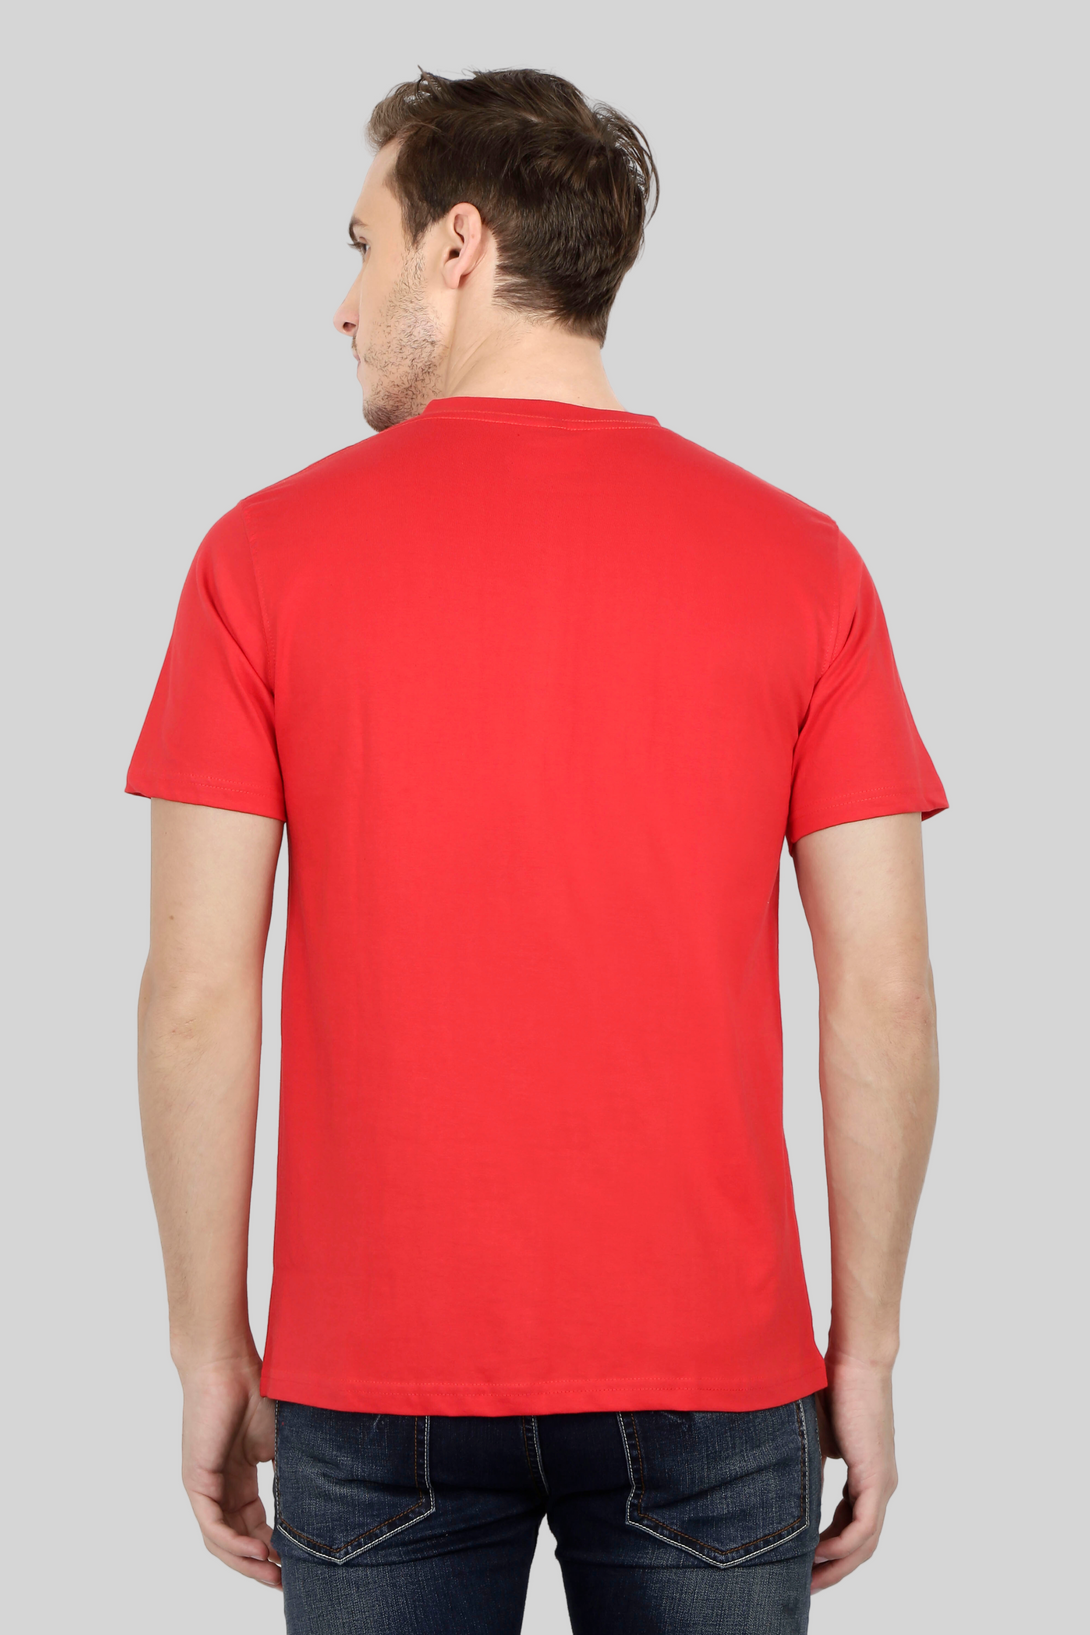 Red V Neck T-Shirt For Men - WowWaves - 8